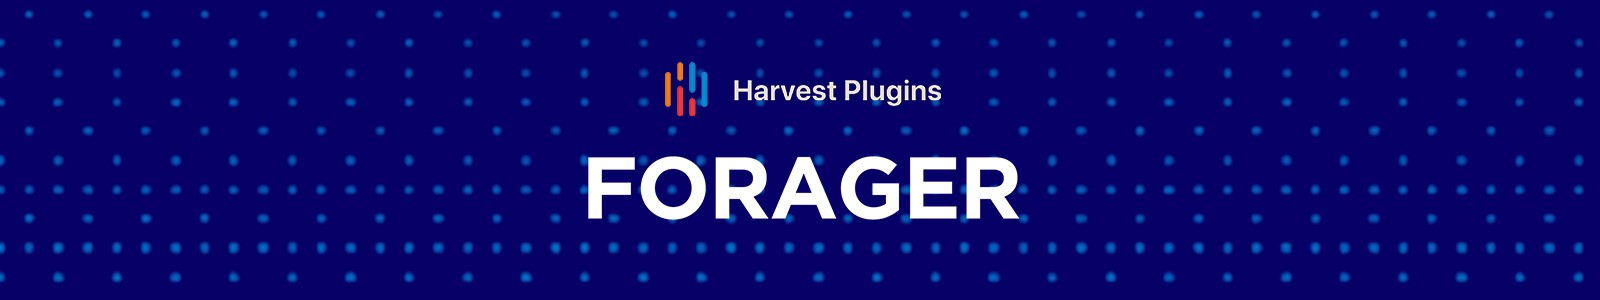 Harvest Plugins Forager